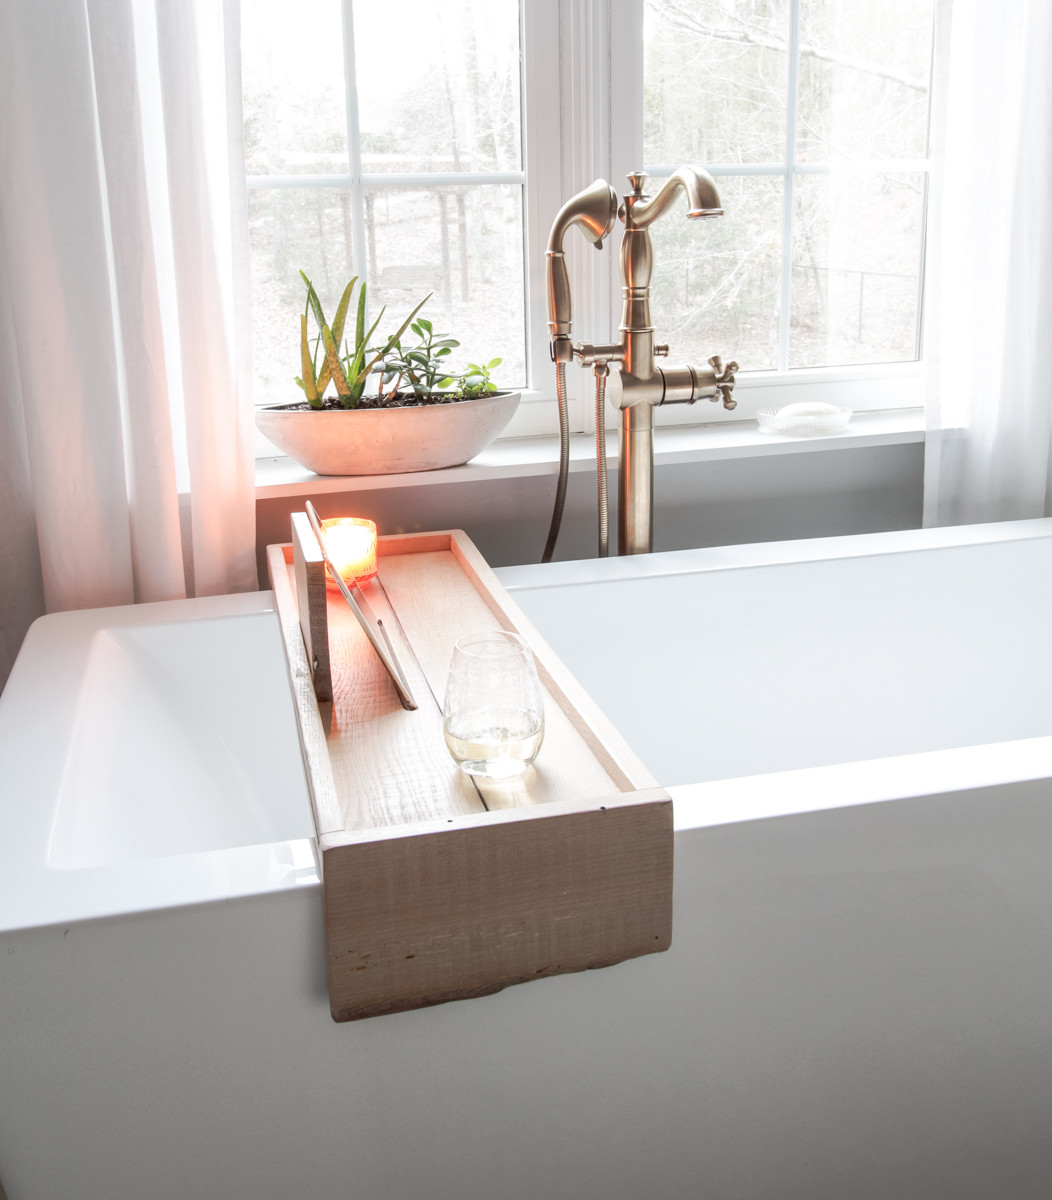 Wooden Bathtub DIY
 DIY Bathtub Tray with Reclaimed Wood